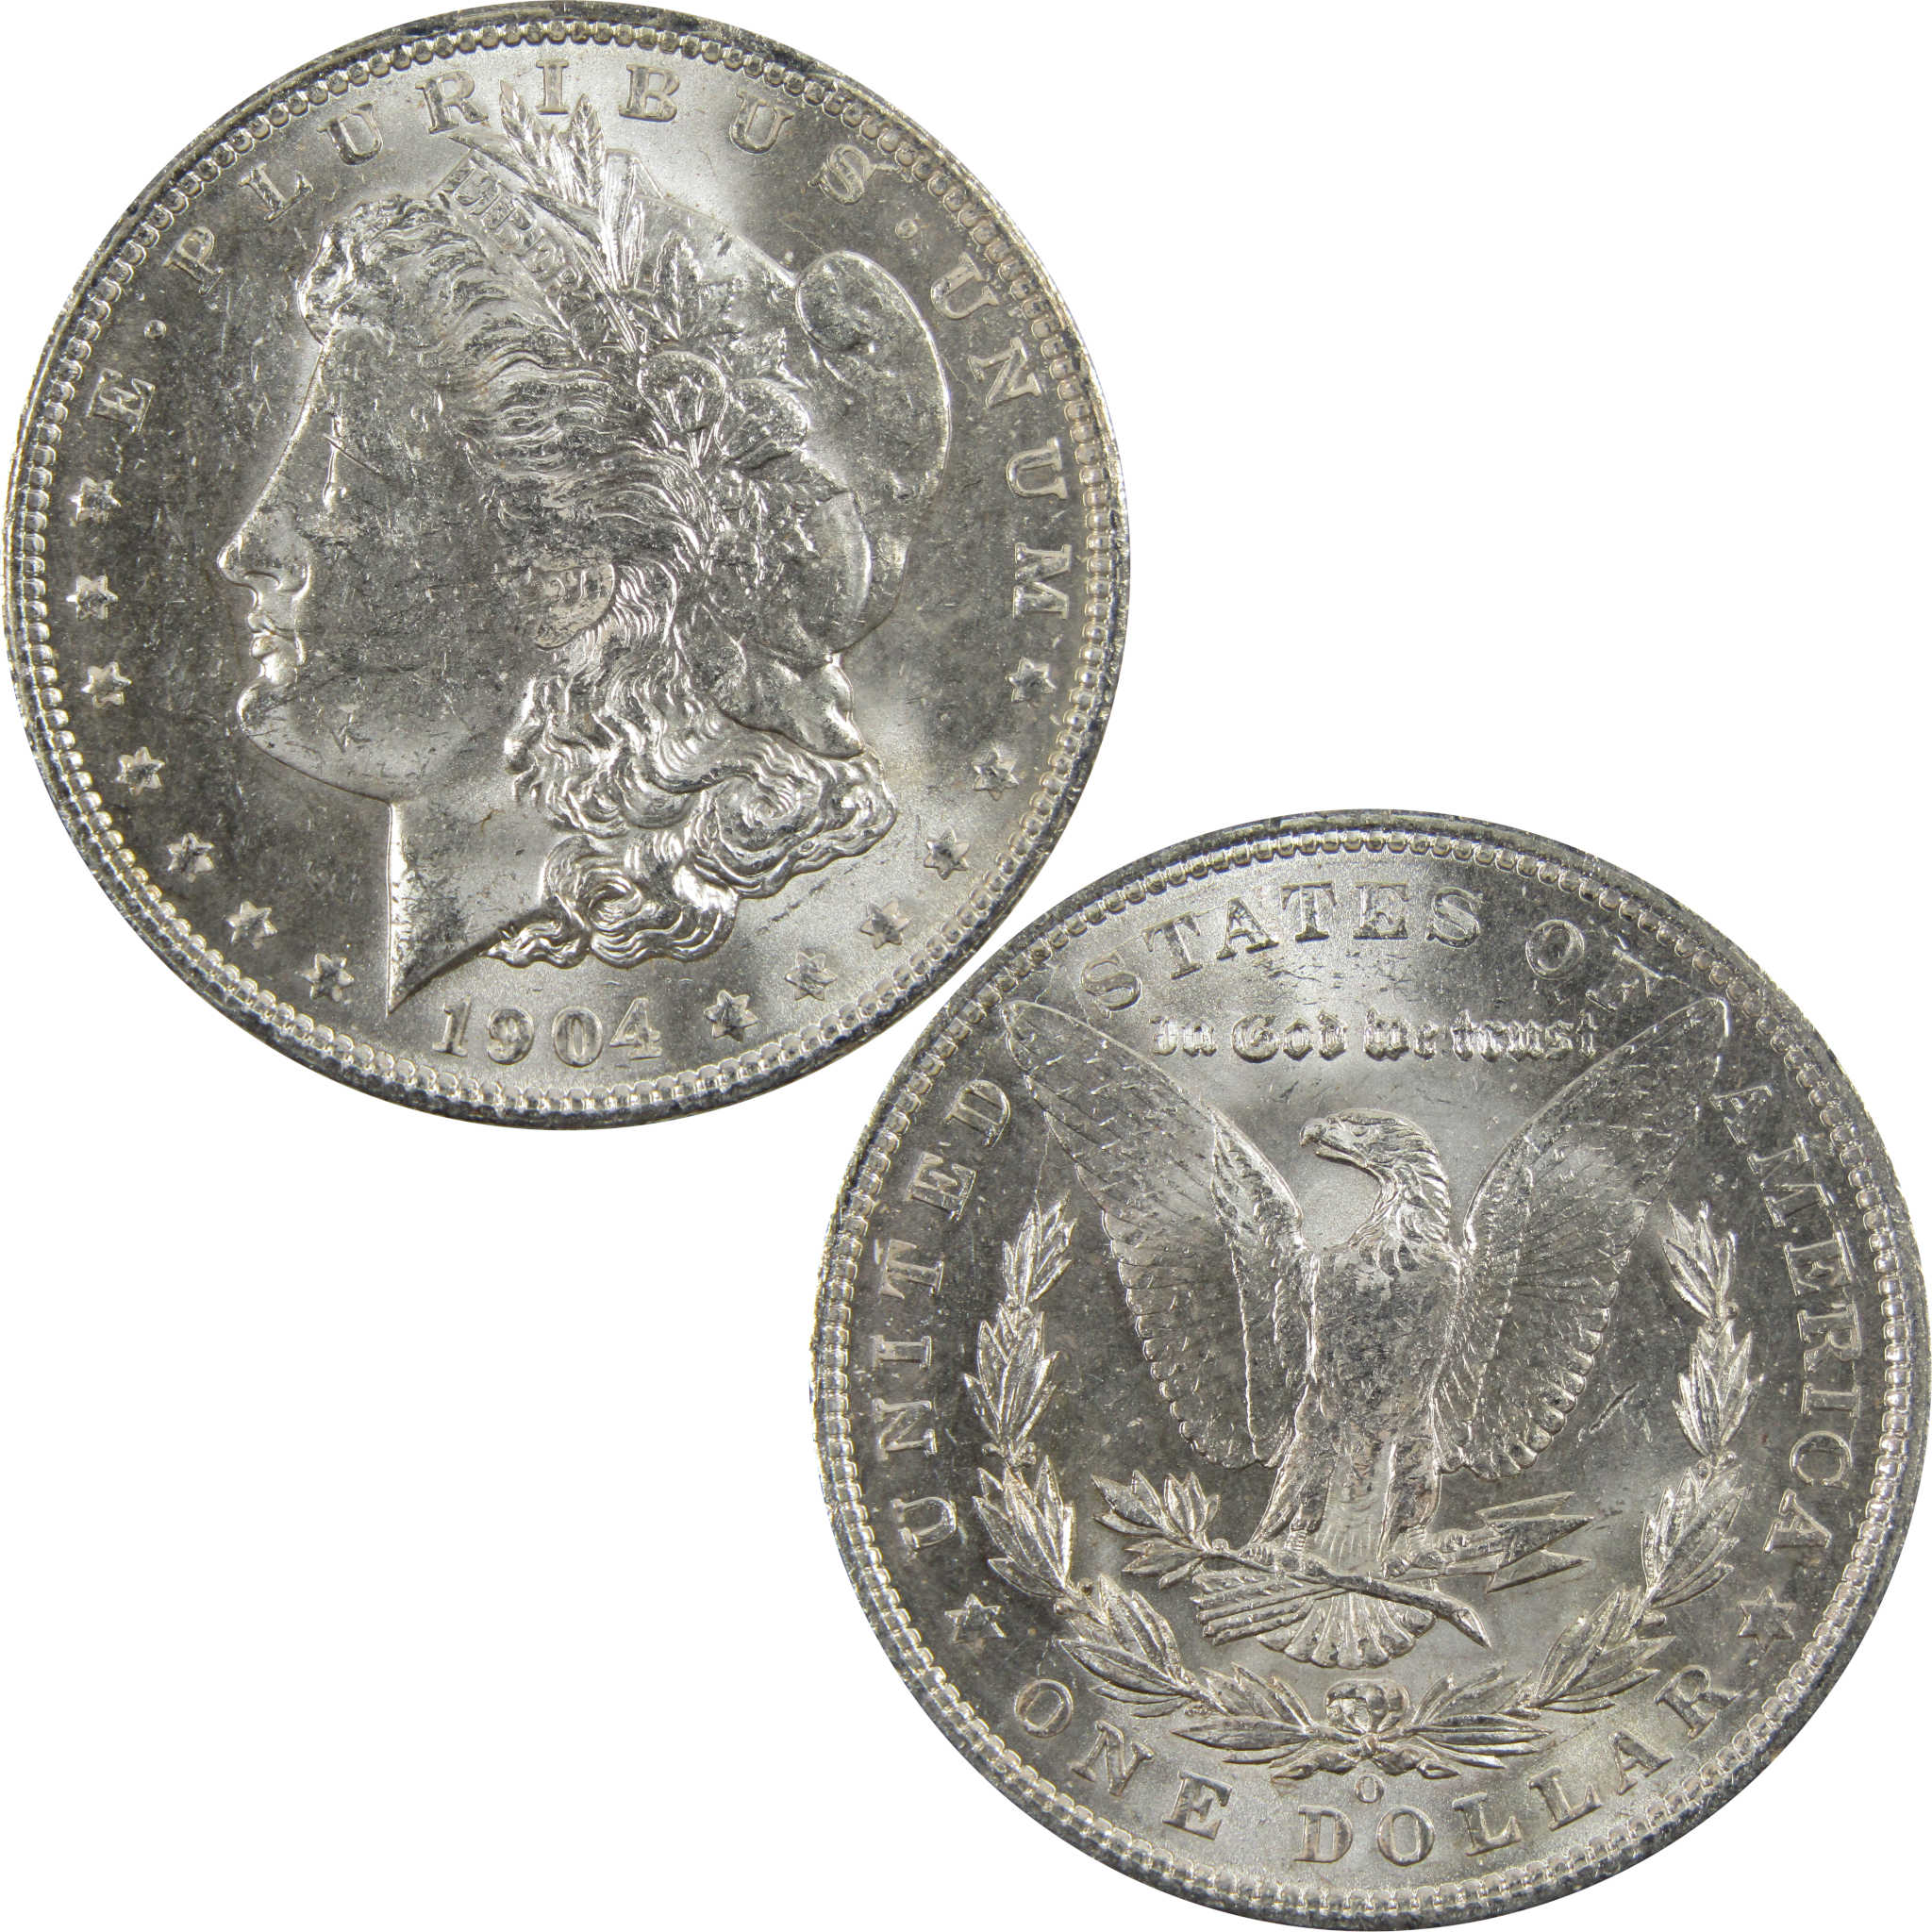 1904 O Morgan Dollar BU Uncirculated 90% Silver $1 Coin SKU:I5277 - Morgan coin - Morgan silver dollar - Morgan silver dollar for sale - Profile Coins &amp; Collectibles